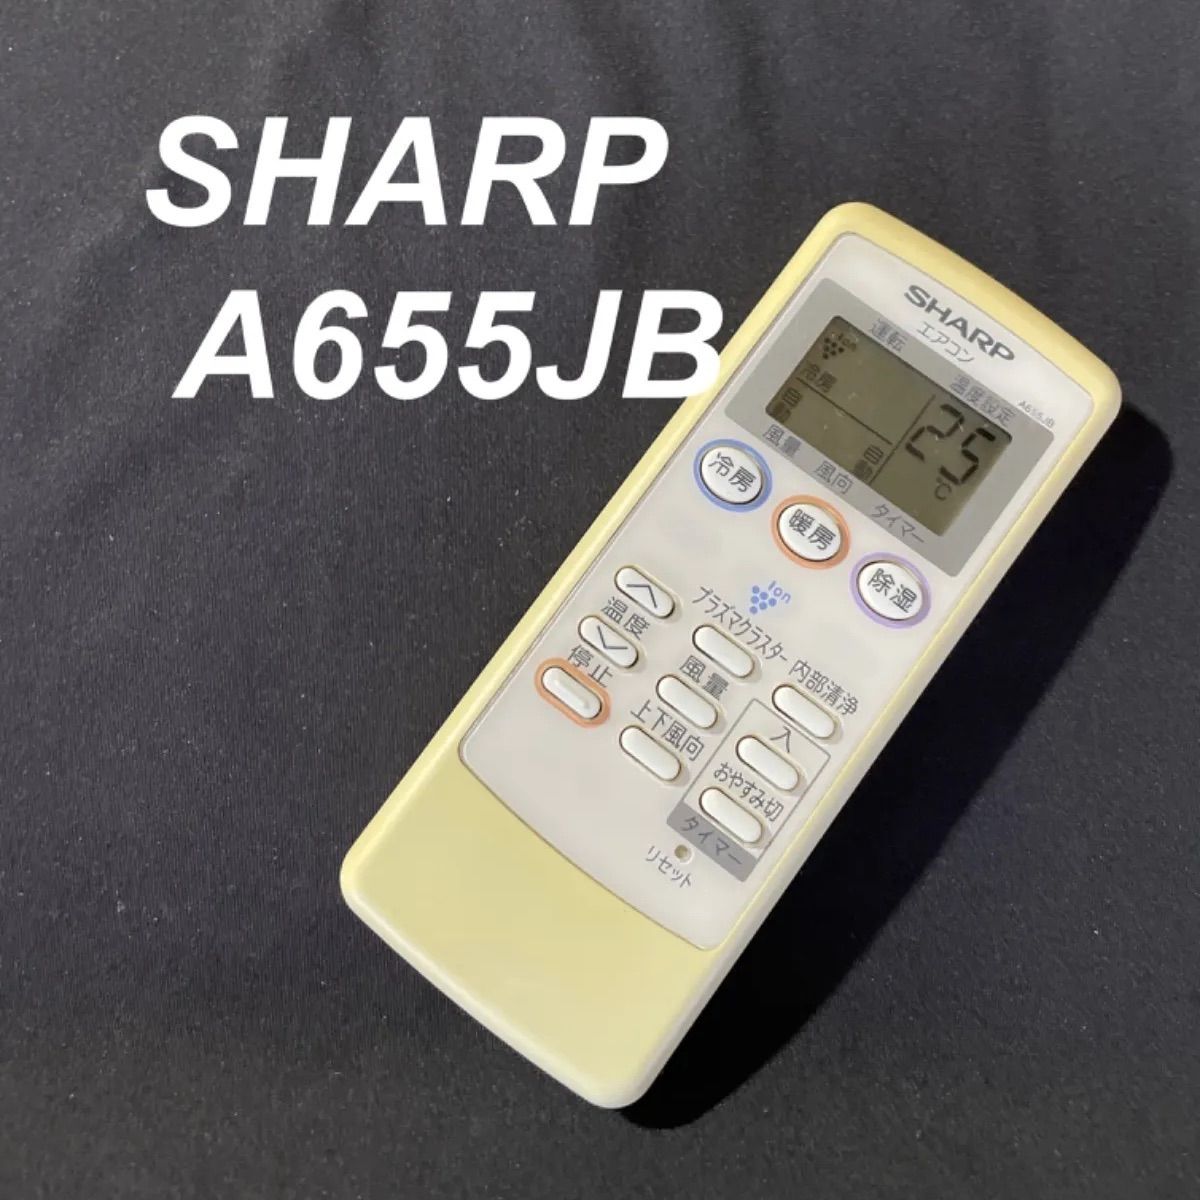 SHARP シャープ エアコンリモコン A655JB - 空調